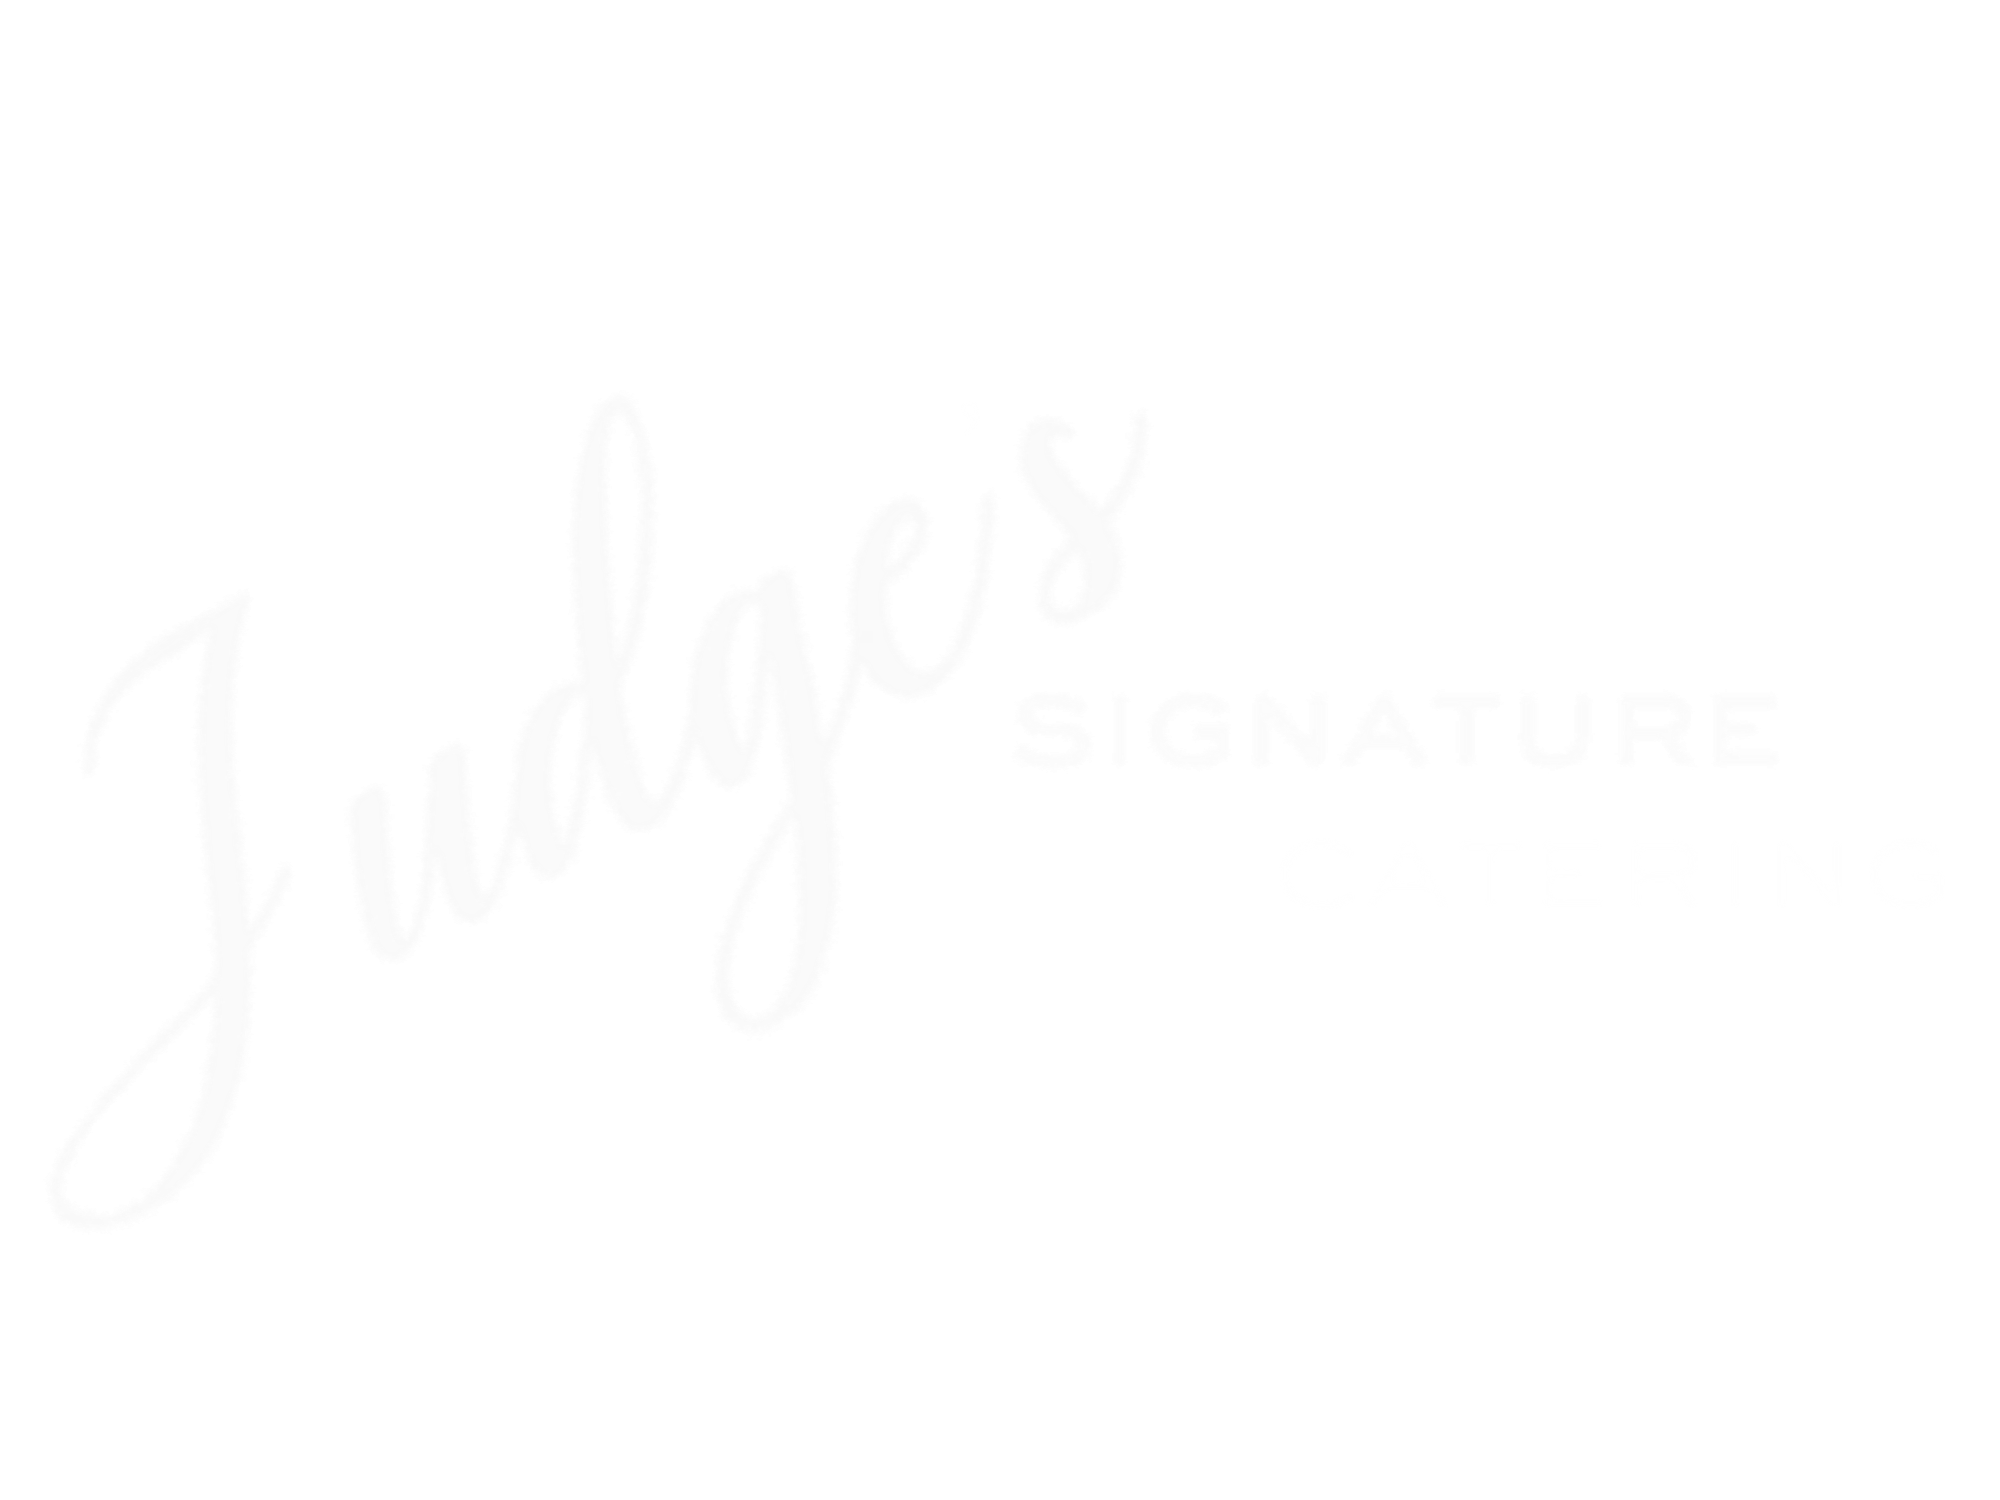 Judge's Signature Catering